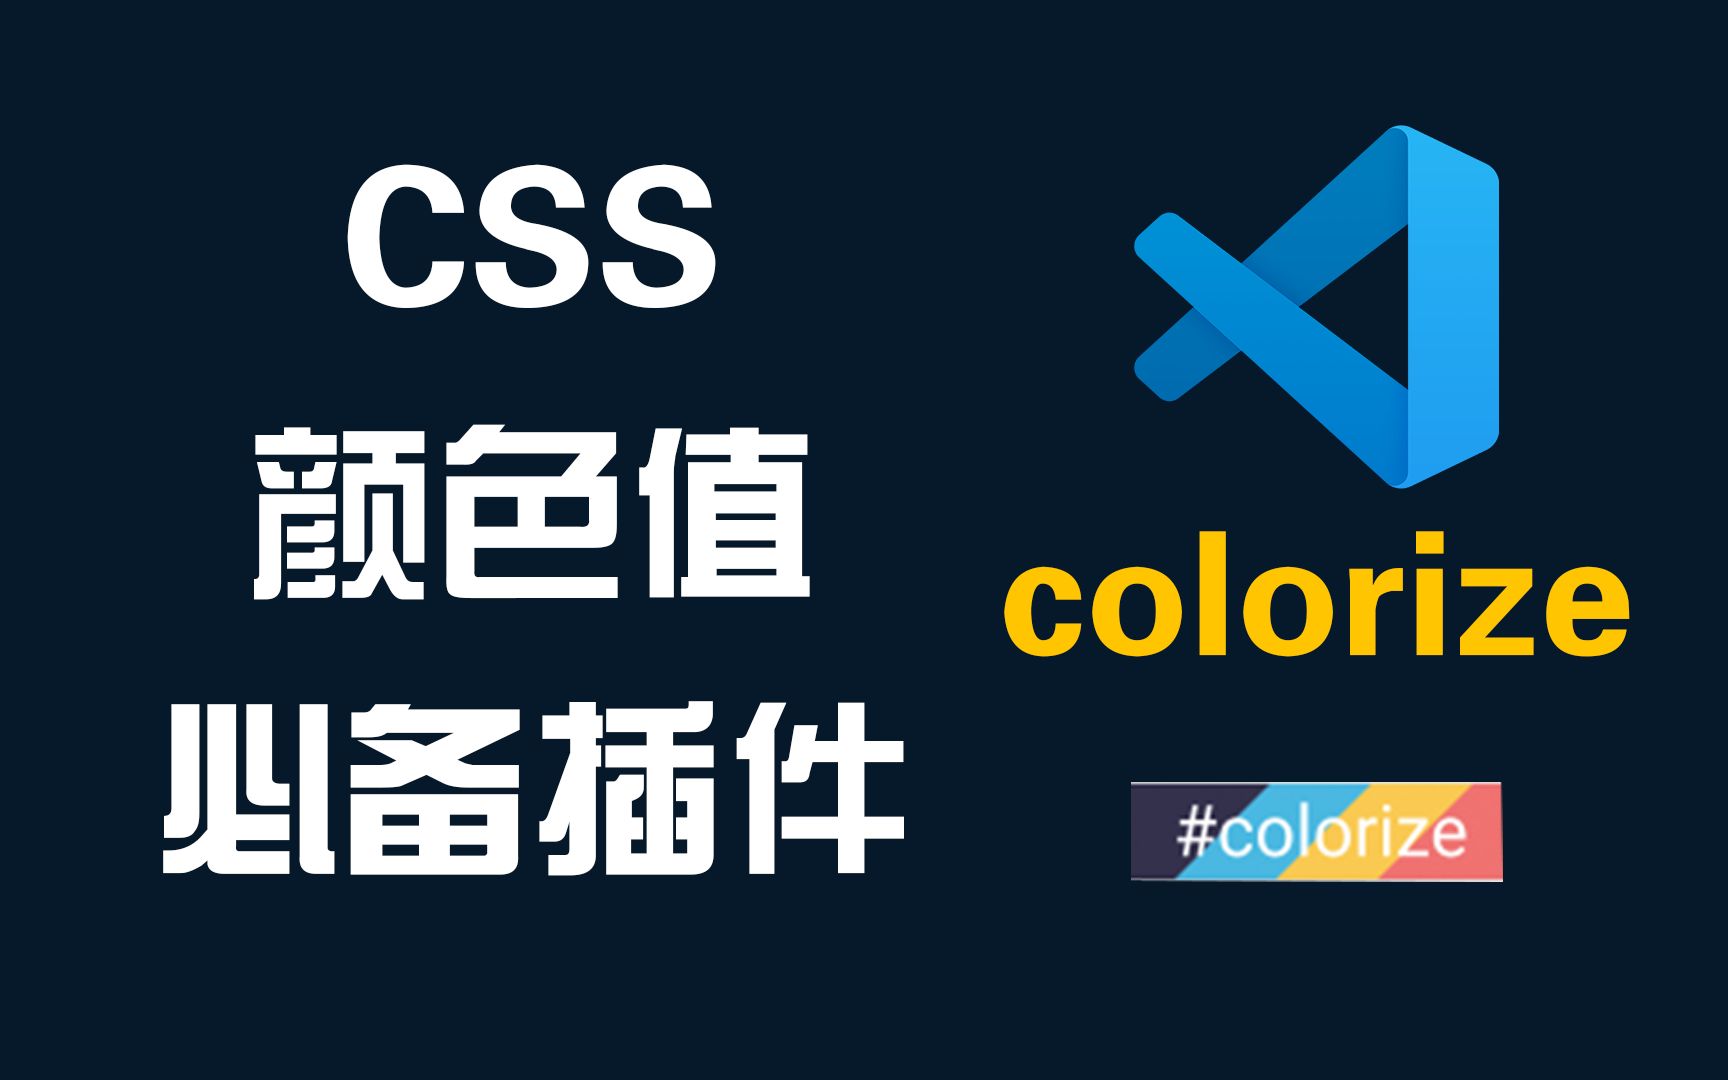 两分钟学会使用展示绚丽颜色值的VSCode插件colorize完整教程-Web前端开发